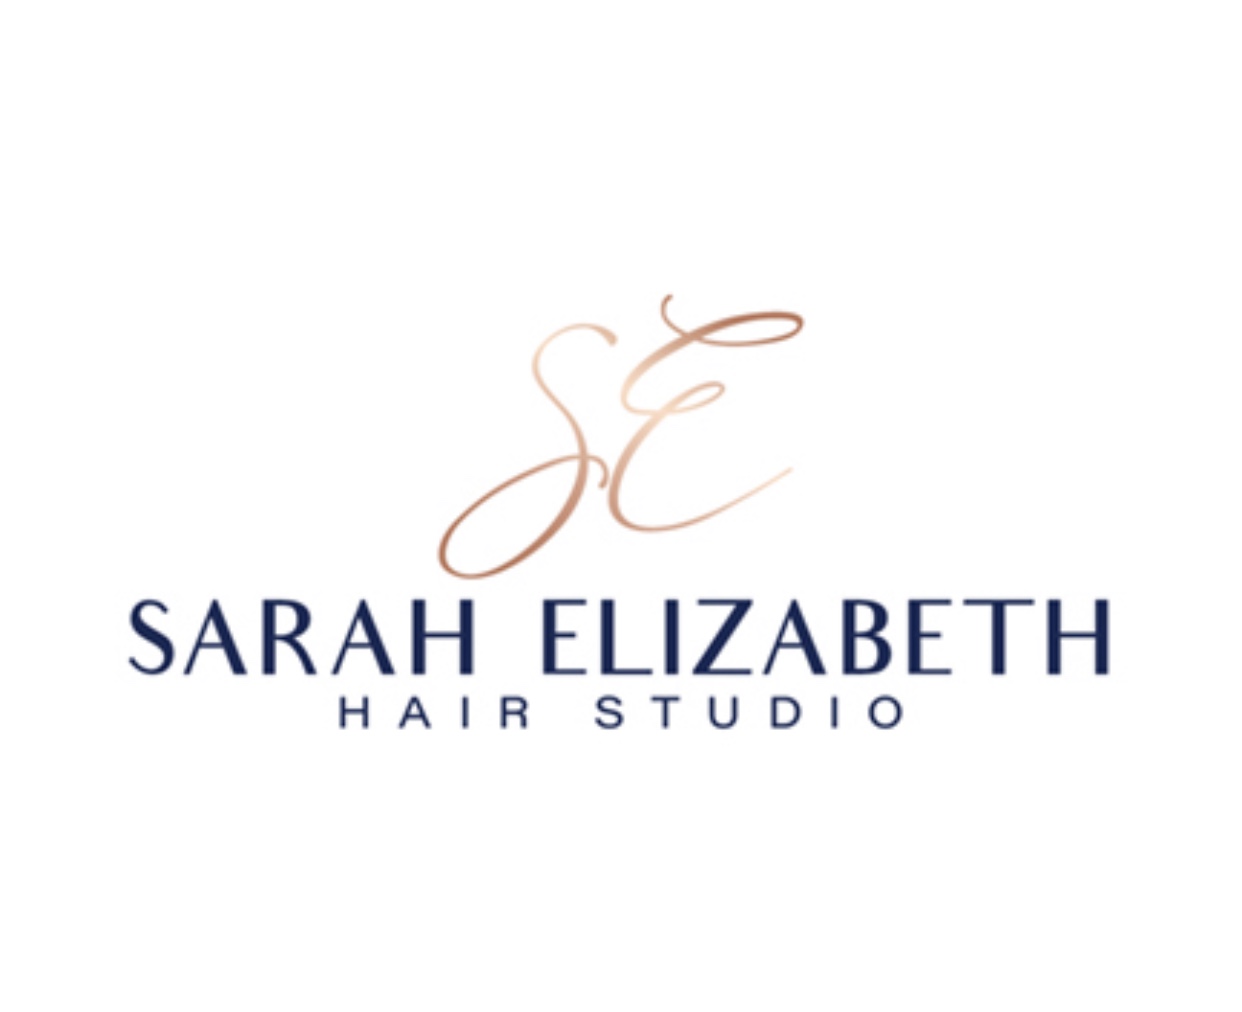 Sarah Elizabeth Hair Studio